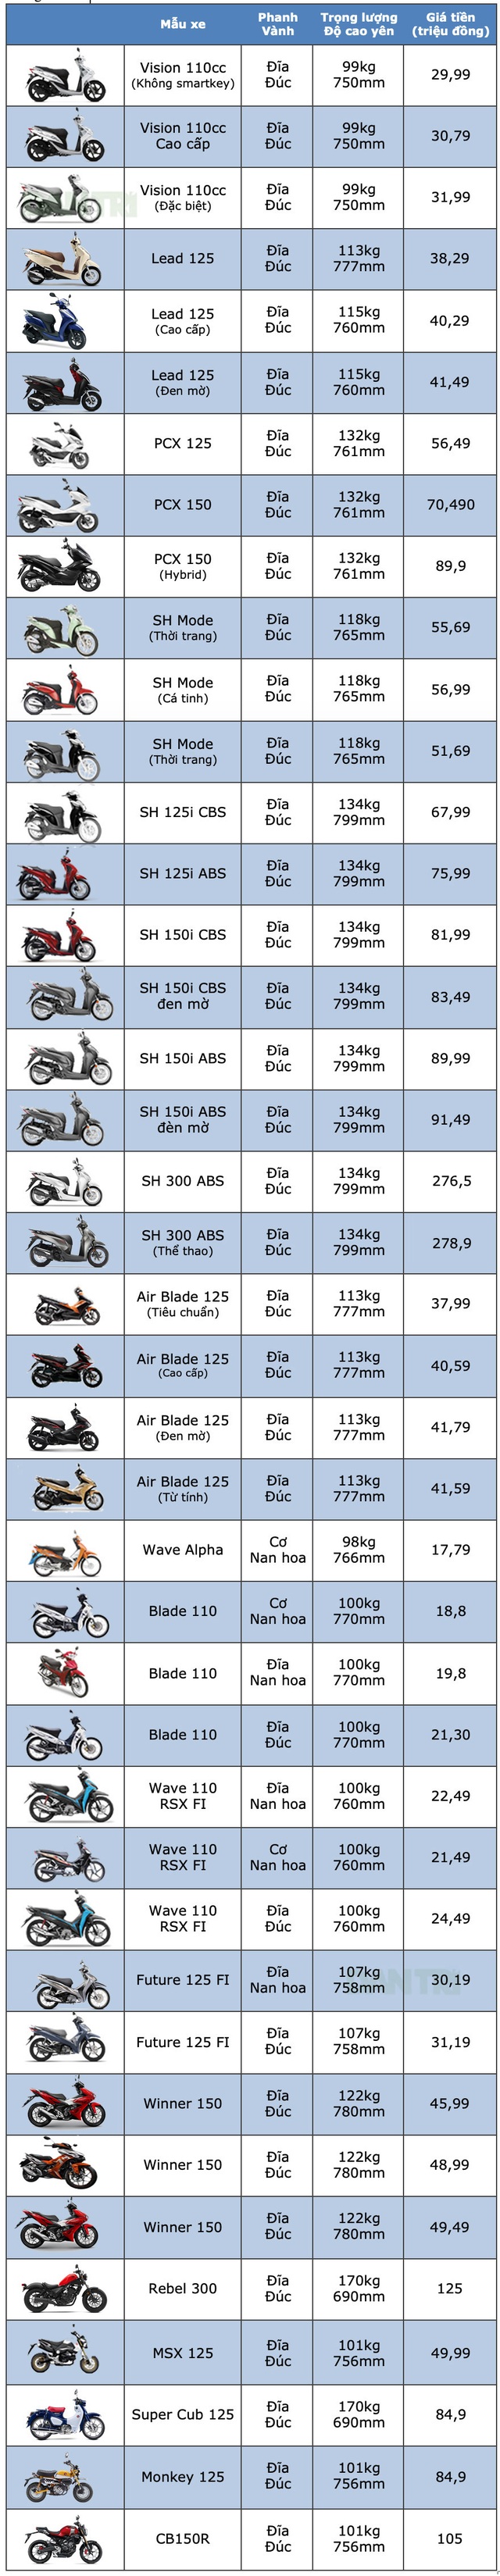 Bảng giá xe máy Honda tại Việt Nam cập nhật tháng 7/2019 - 3